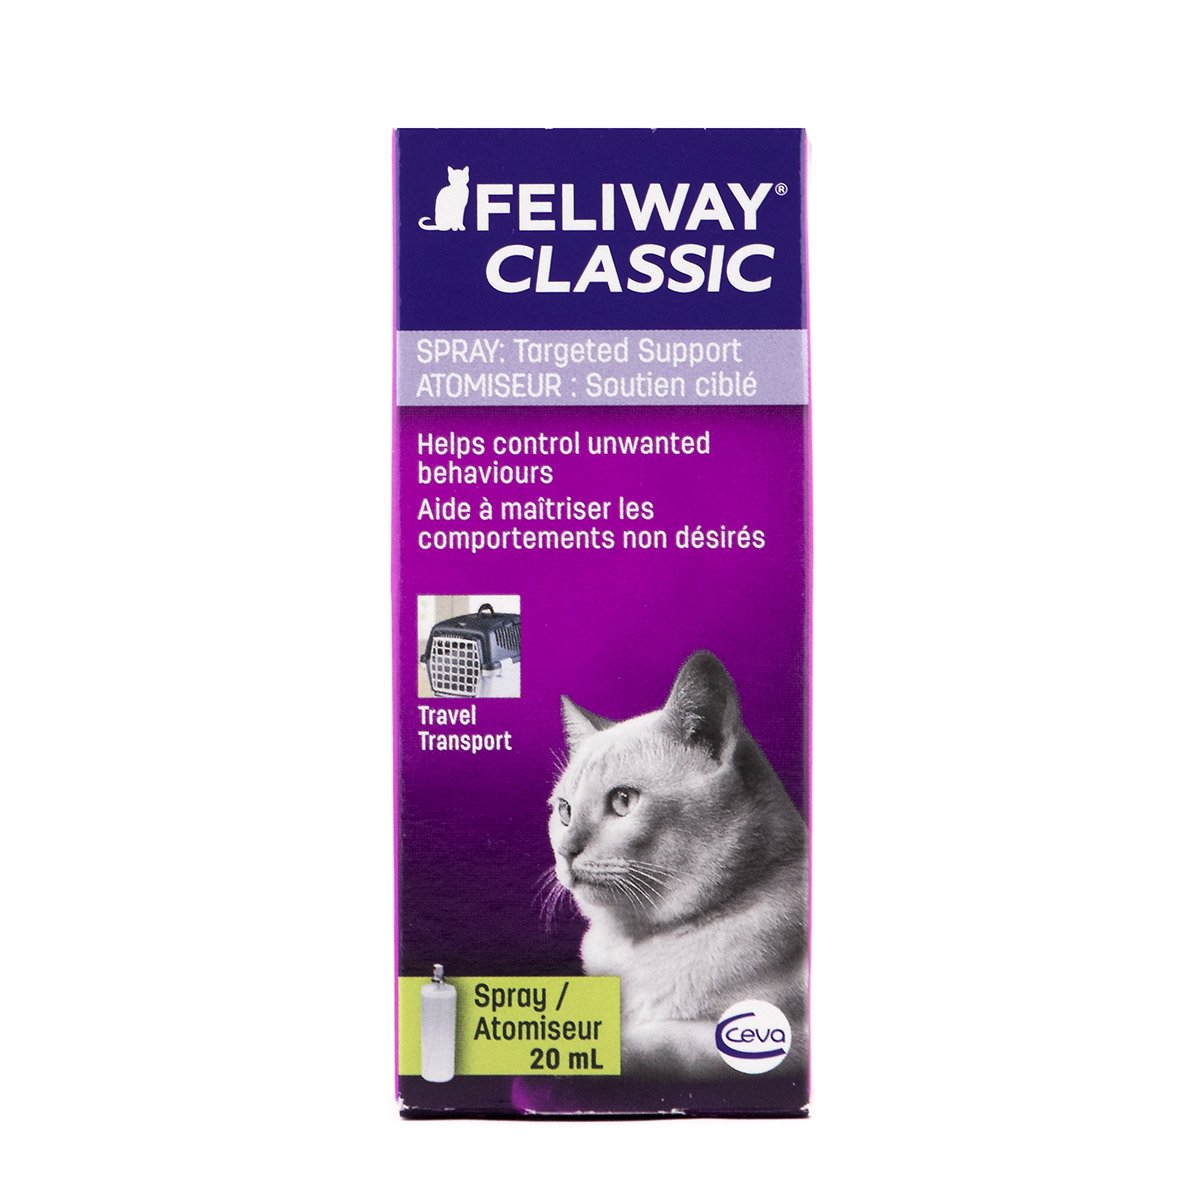 Feliway Spray 60mL – Pet Horse & Farm